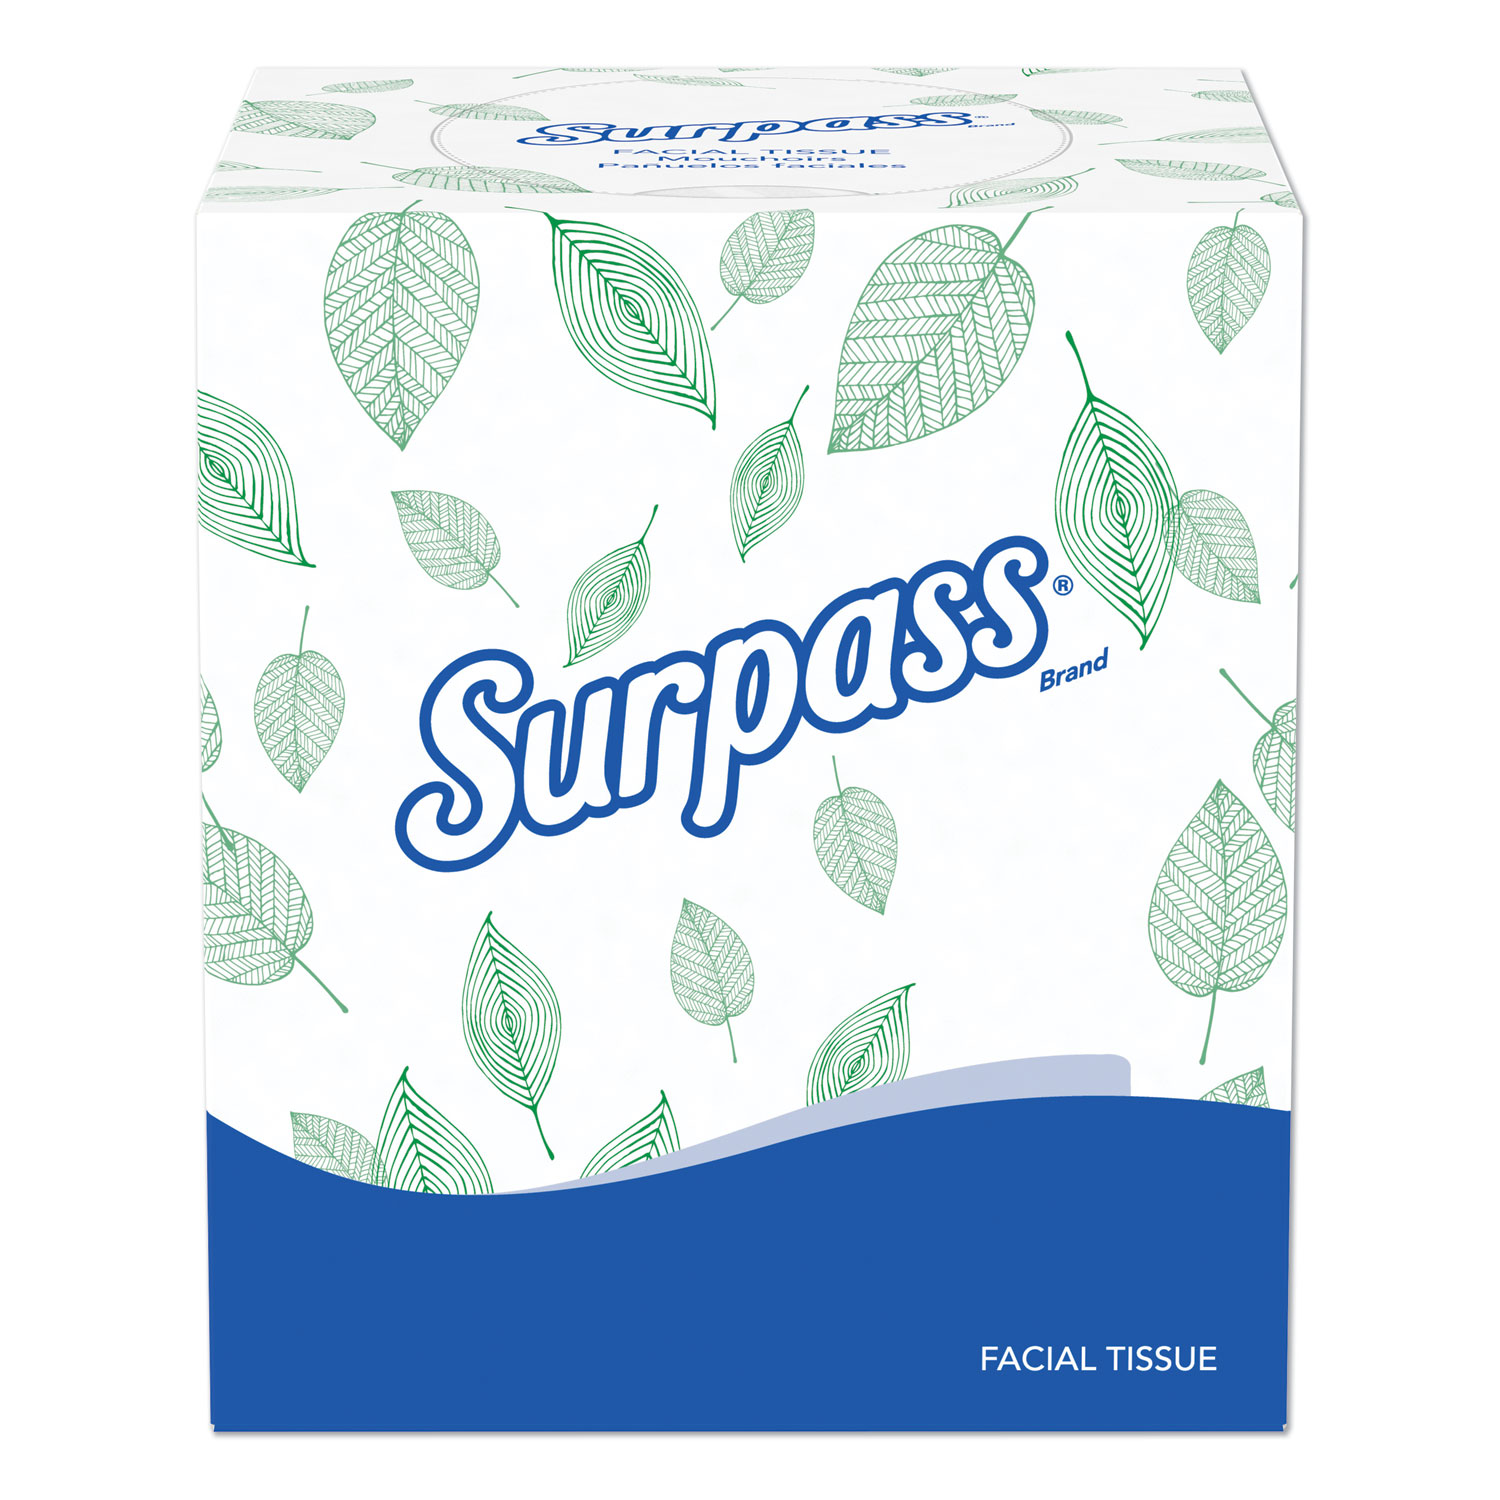  Surpass 21320 Facial Tissue, 2-Ply, White, Pop-Up Box, 110/Box, 36 Boxes/Carton (KCC21320) 